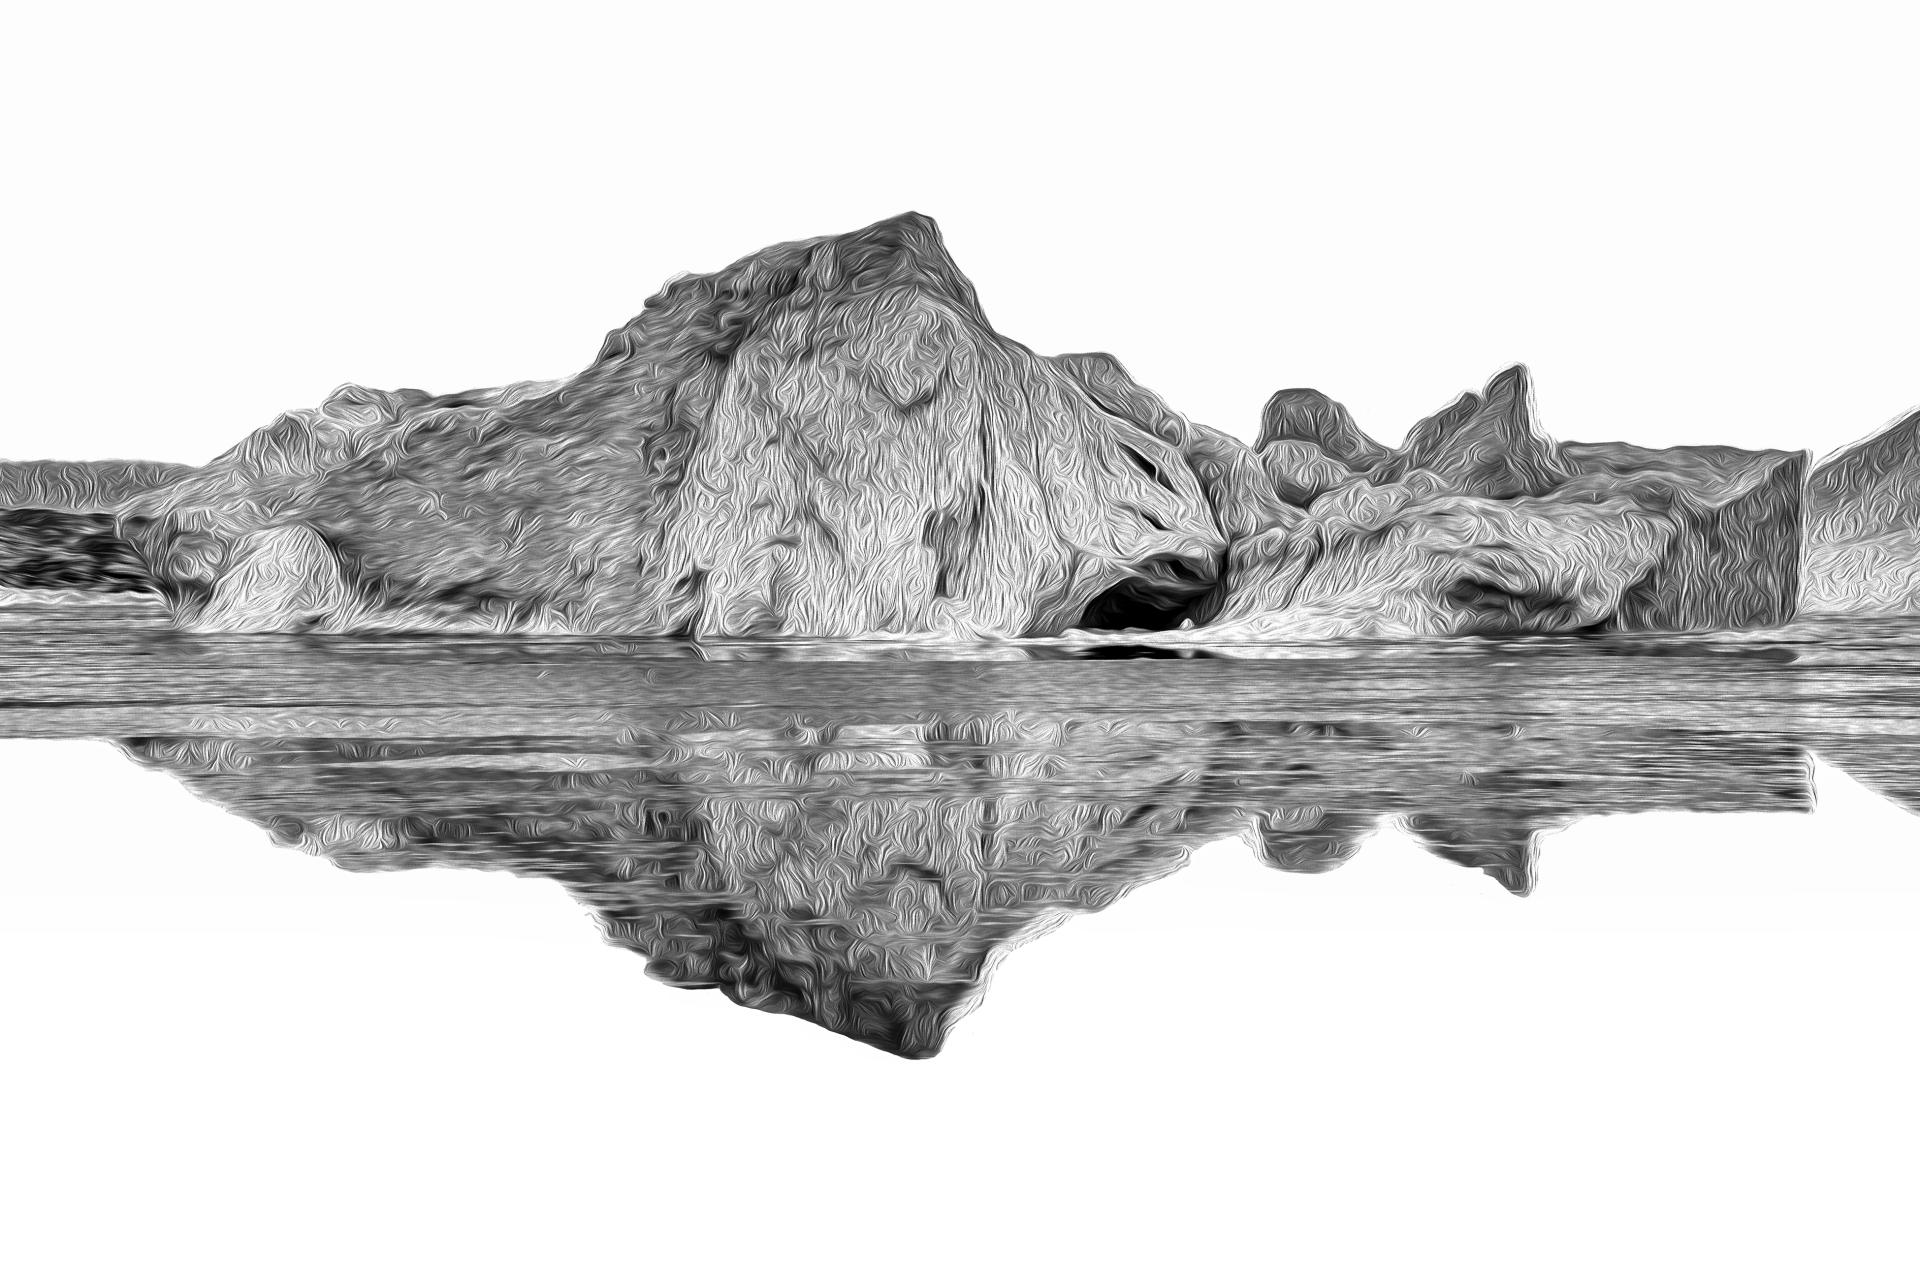 New York Photography Awards Winner - The Art of Iceberg